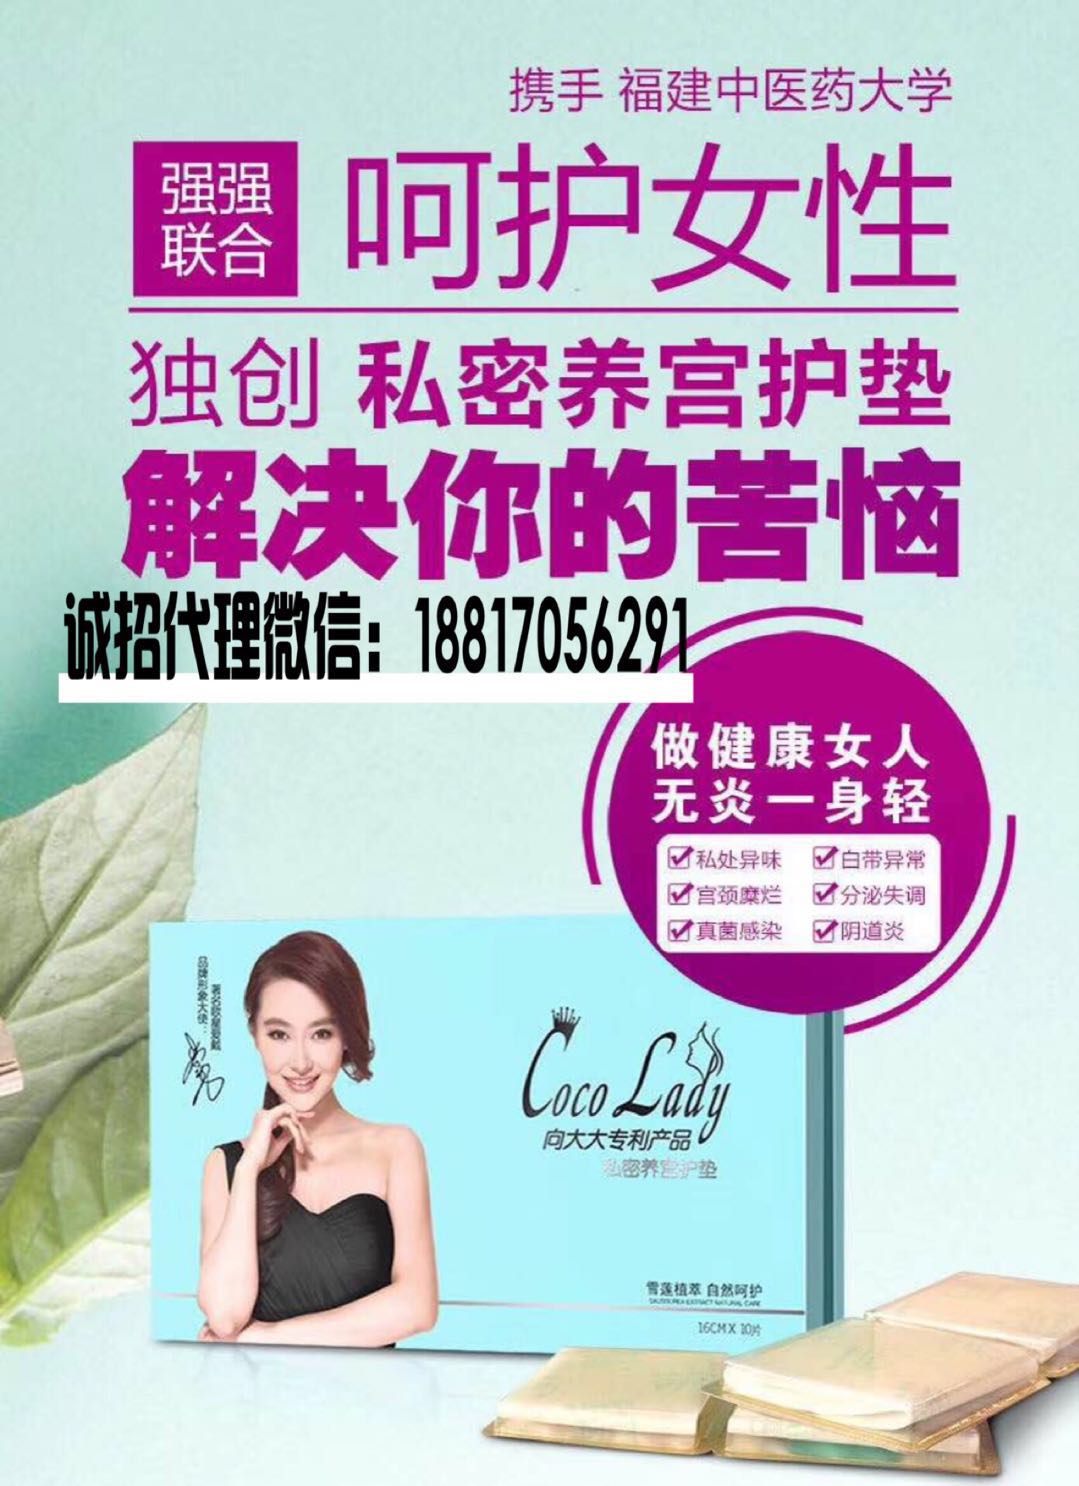 CoCo lady养宫护垫――女性私密的护理专家朱凌